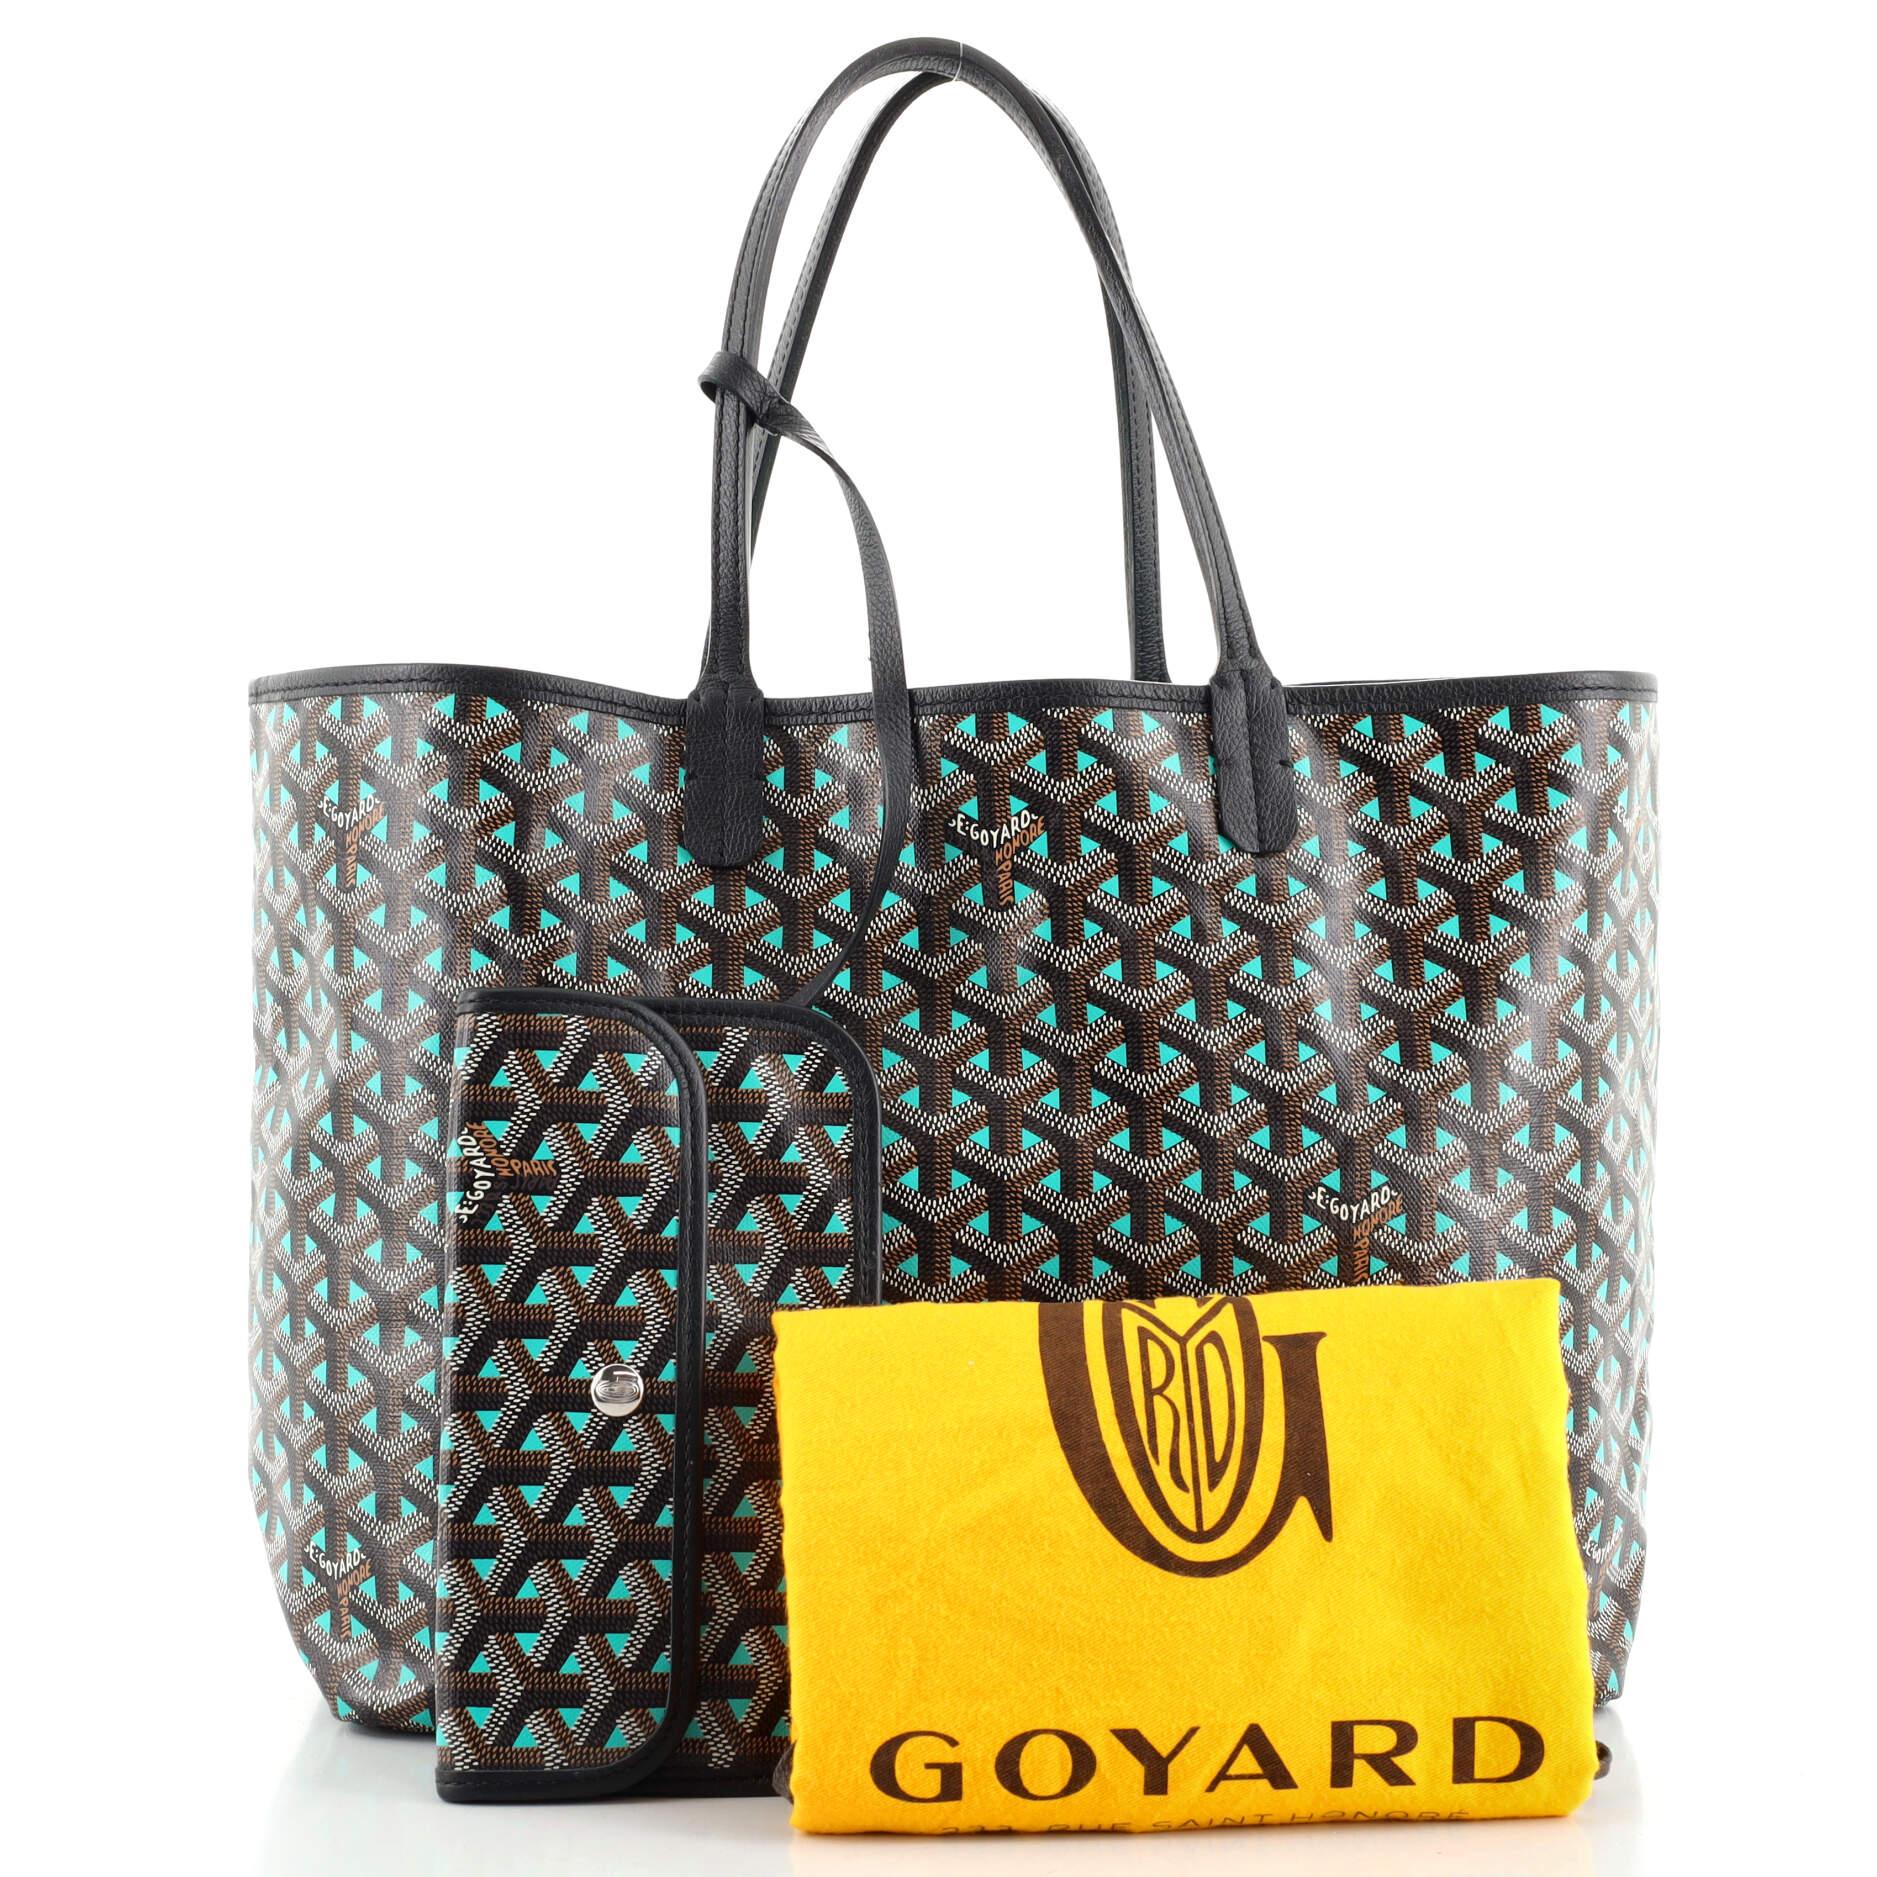 Goyard Limited - 5 For Sale on 1stDibs  goyard limited edition 2022, goyard  limited edition colors, goyard limited edition 2021